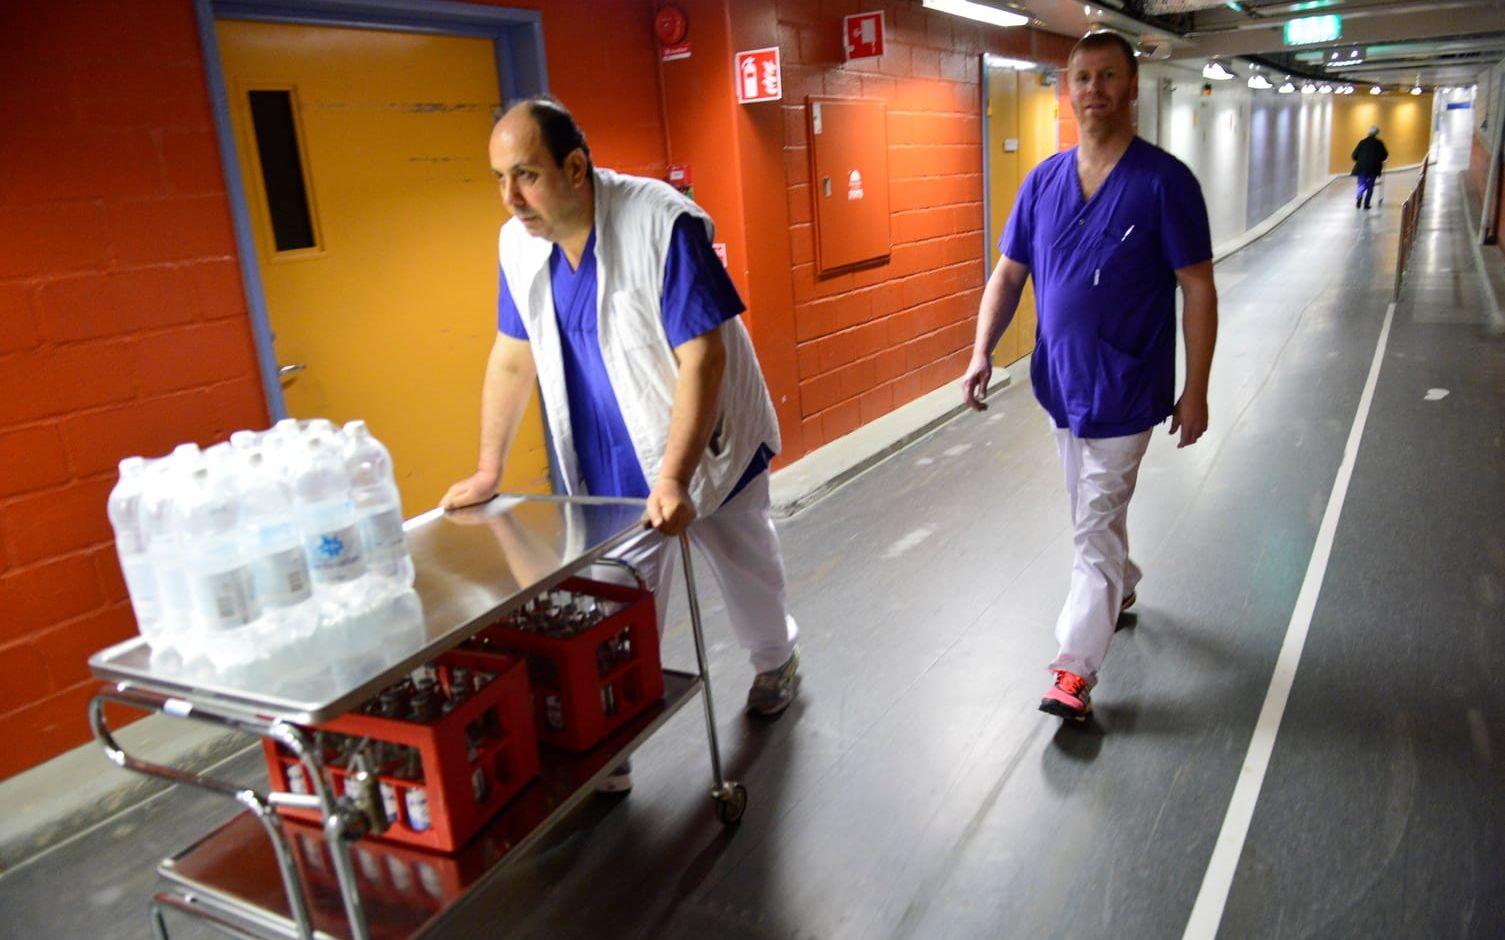 Många fick hämta vatten. Här är det Monir Shabo och Jörgen Sund som hämtar vattenflaskor till röntgenavdelningen. Bild: Stefan Bennhage